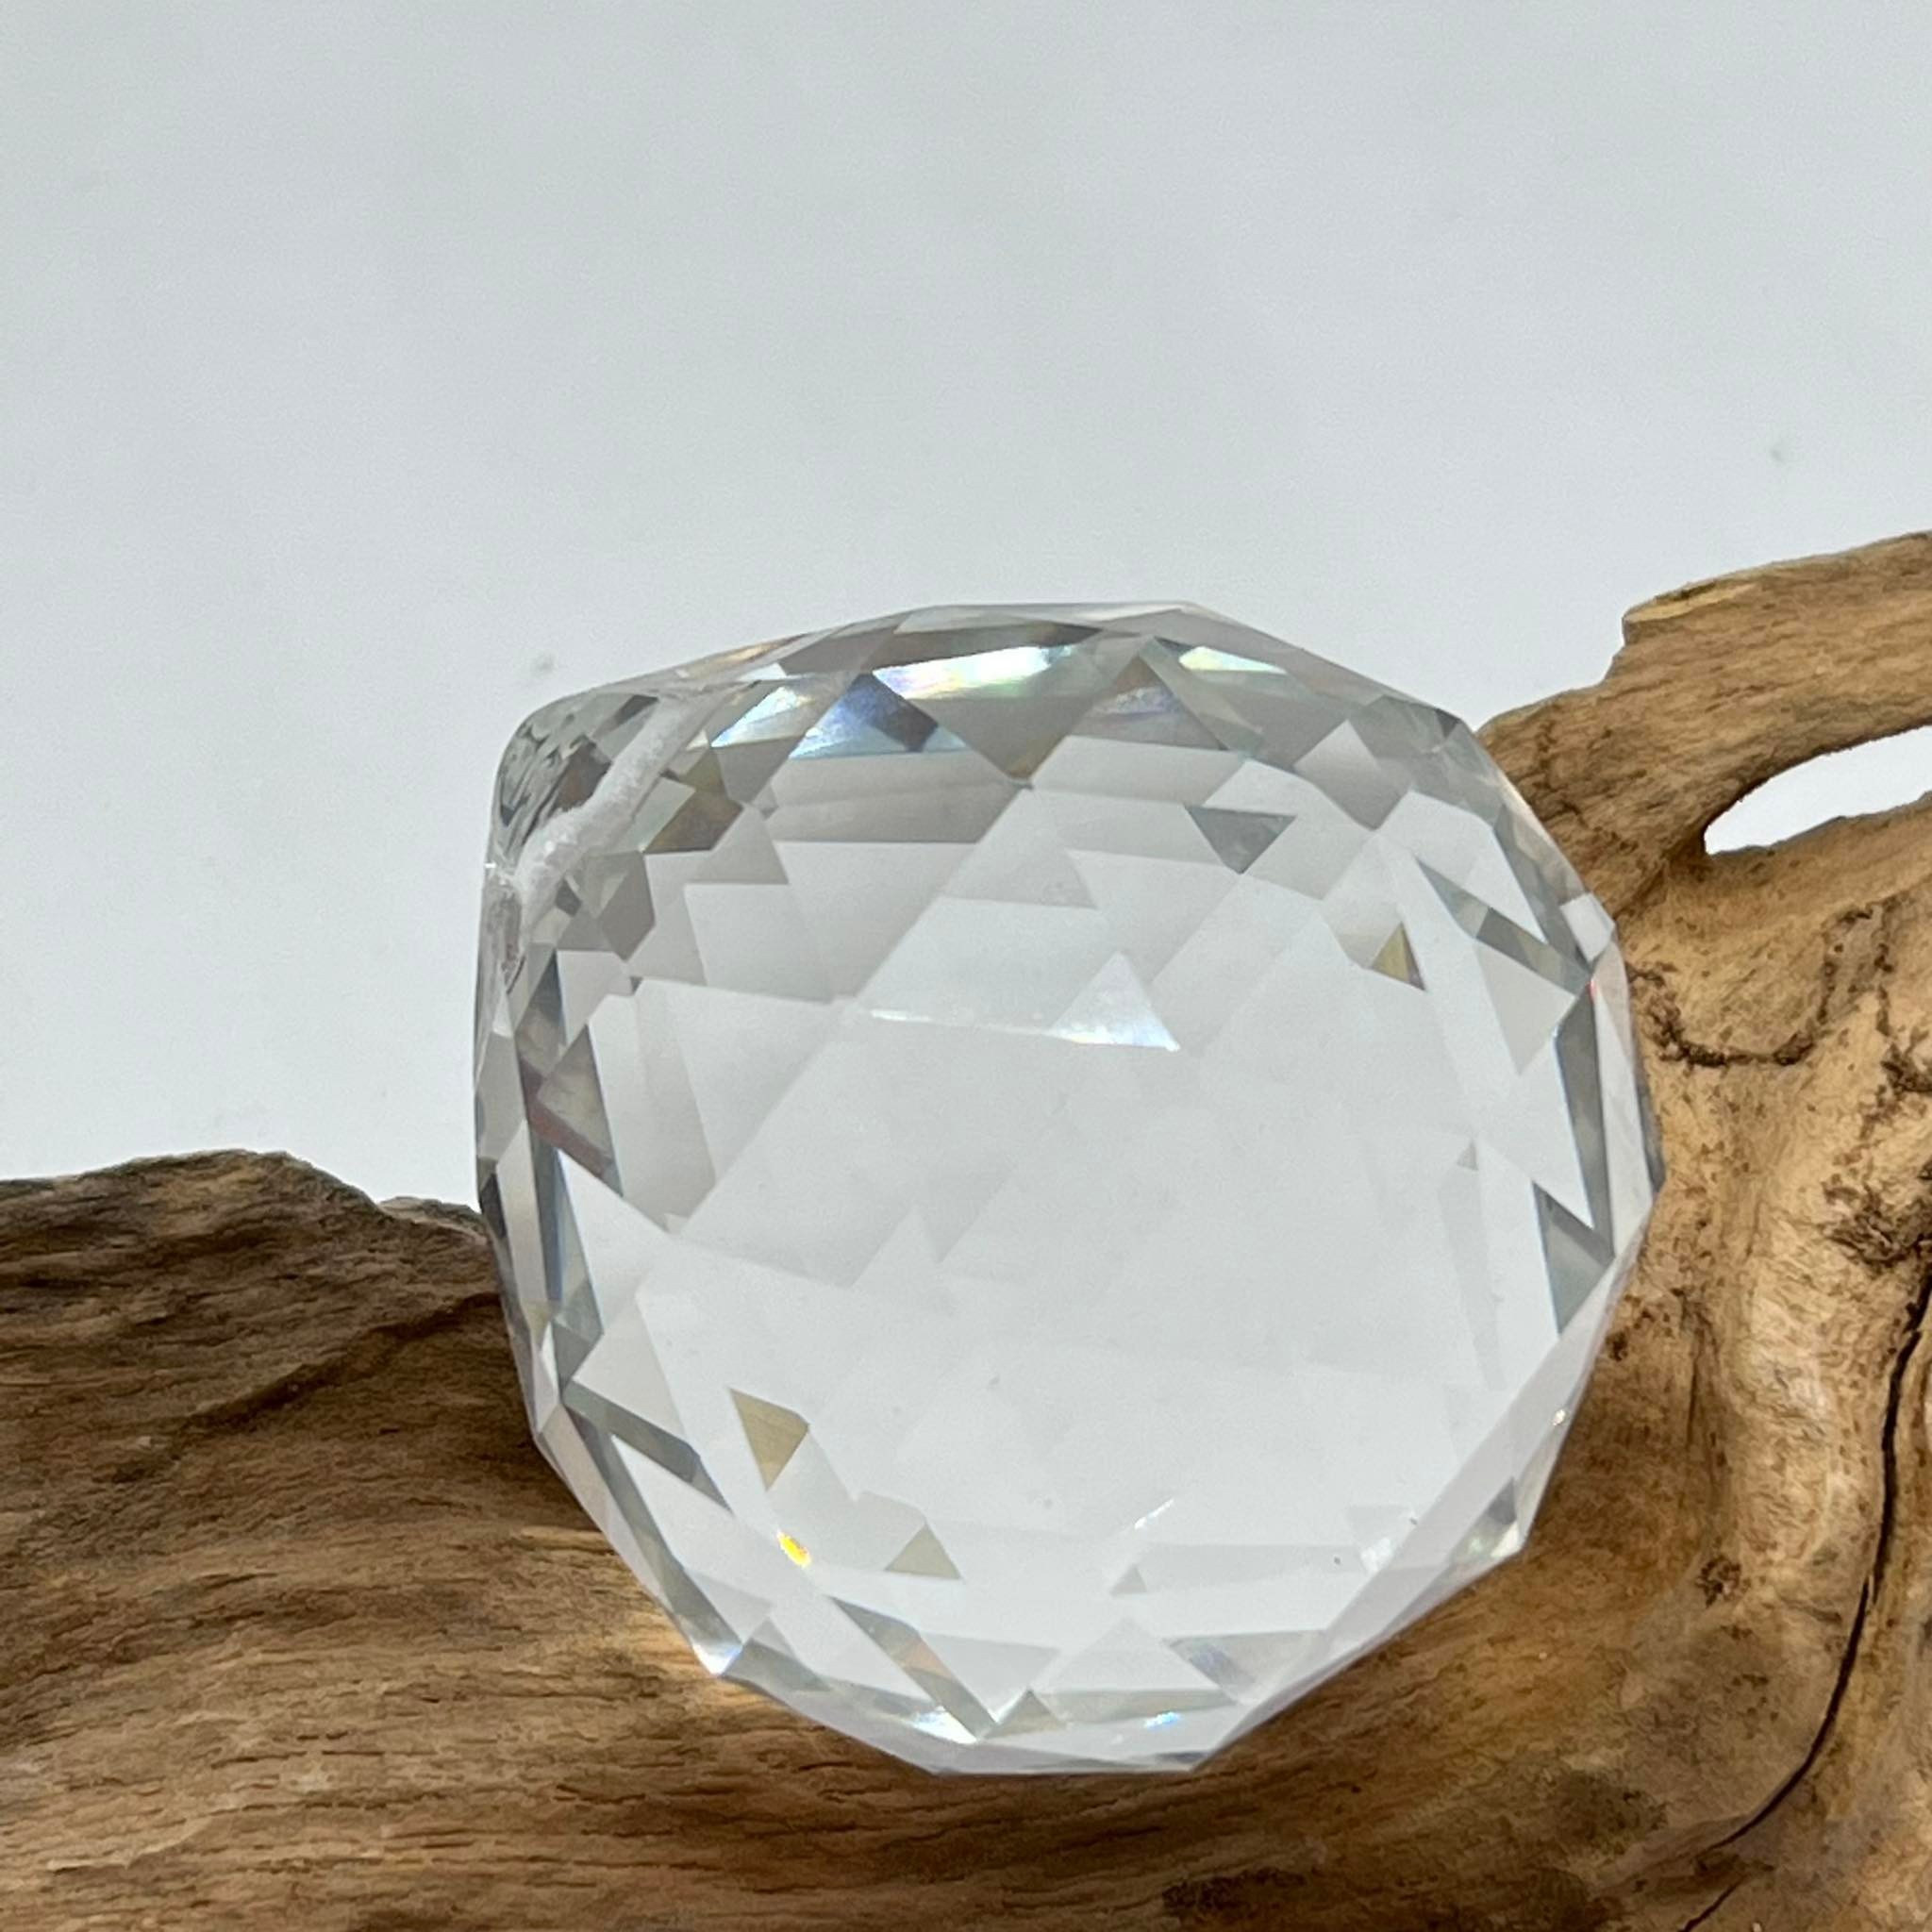 Boule de cristal à facettes sur support dans une boîte cadeau